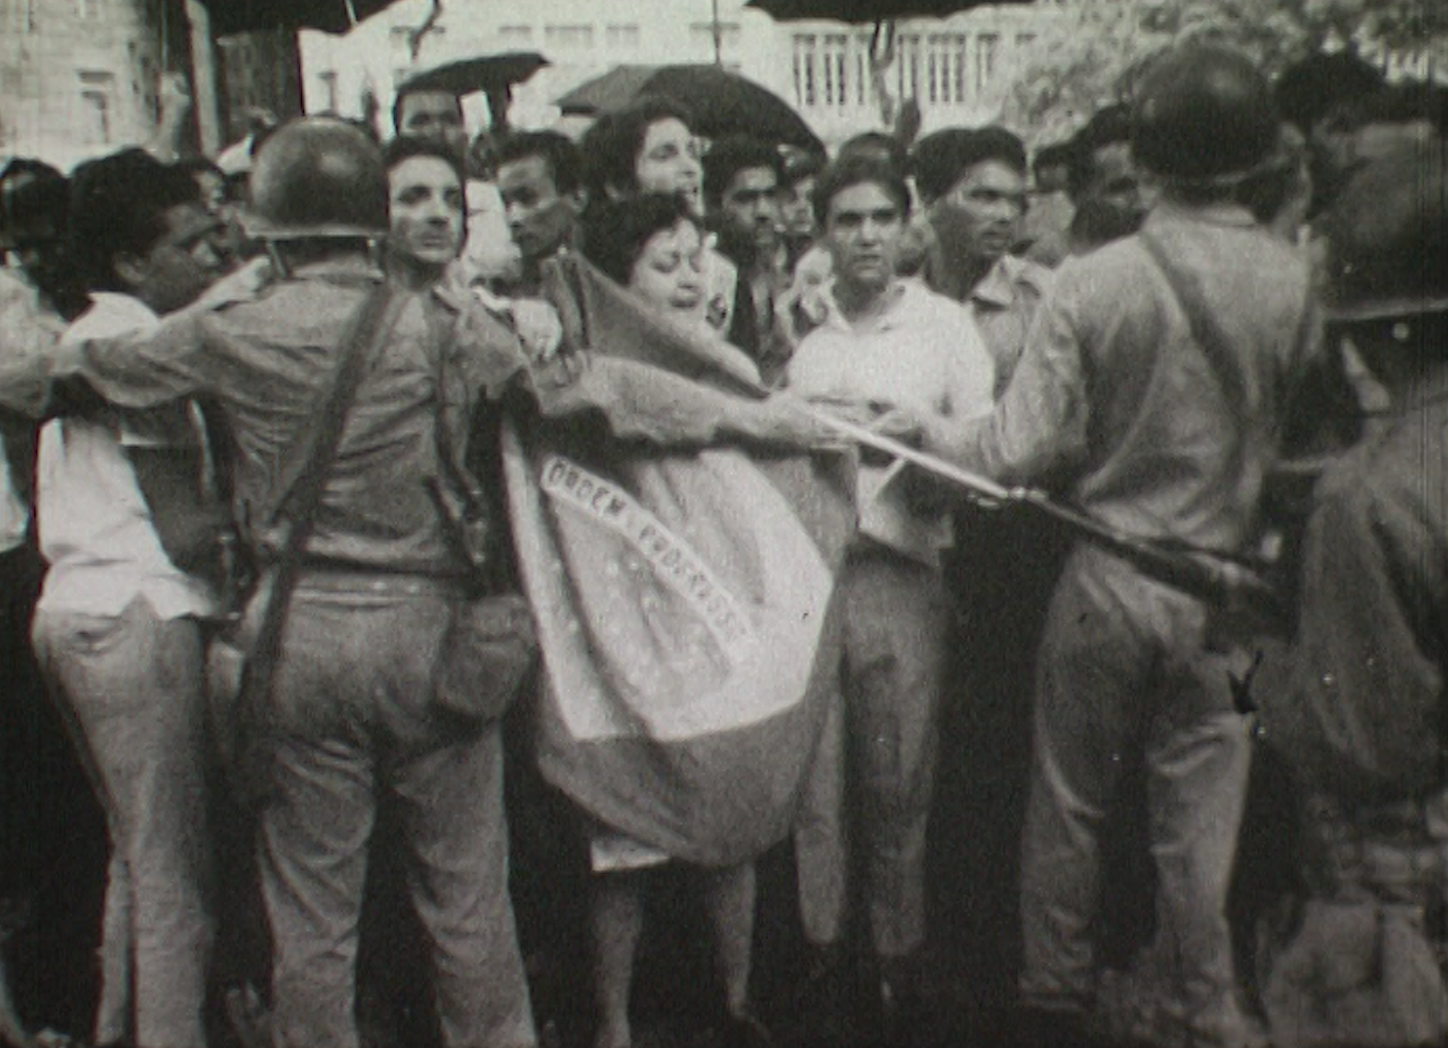 1964: les militaires prennent le pouvoir au Brésil